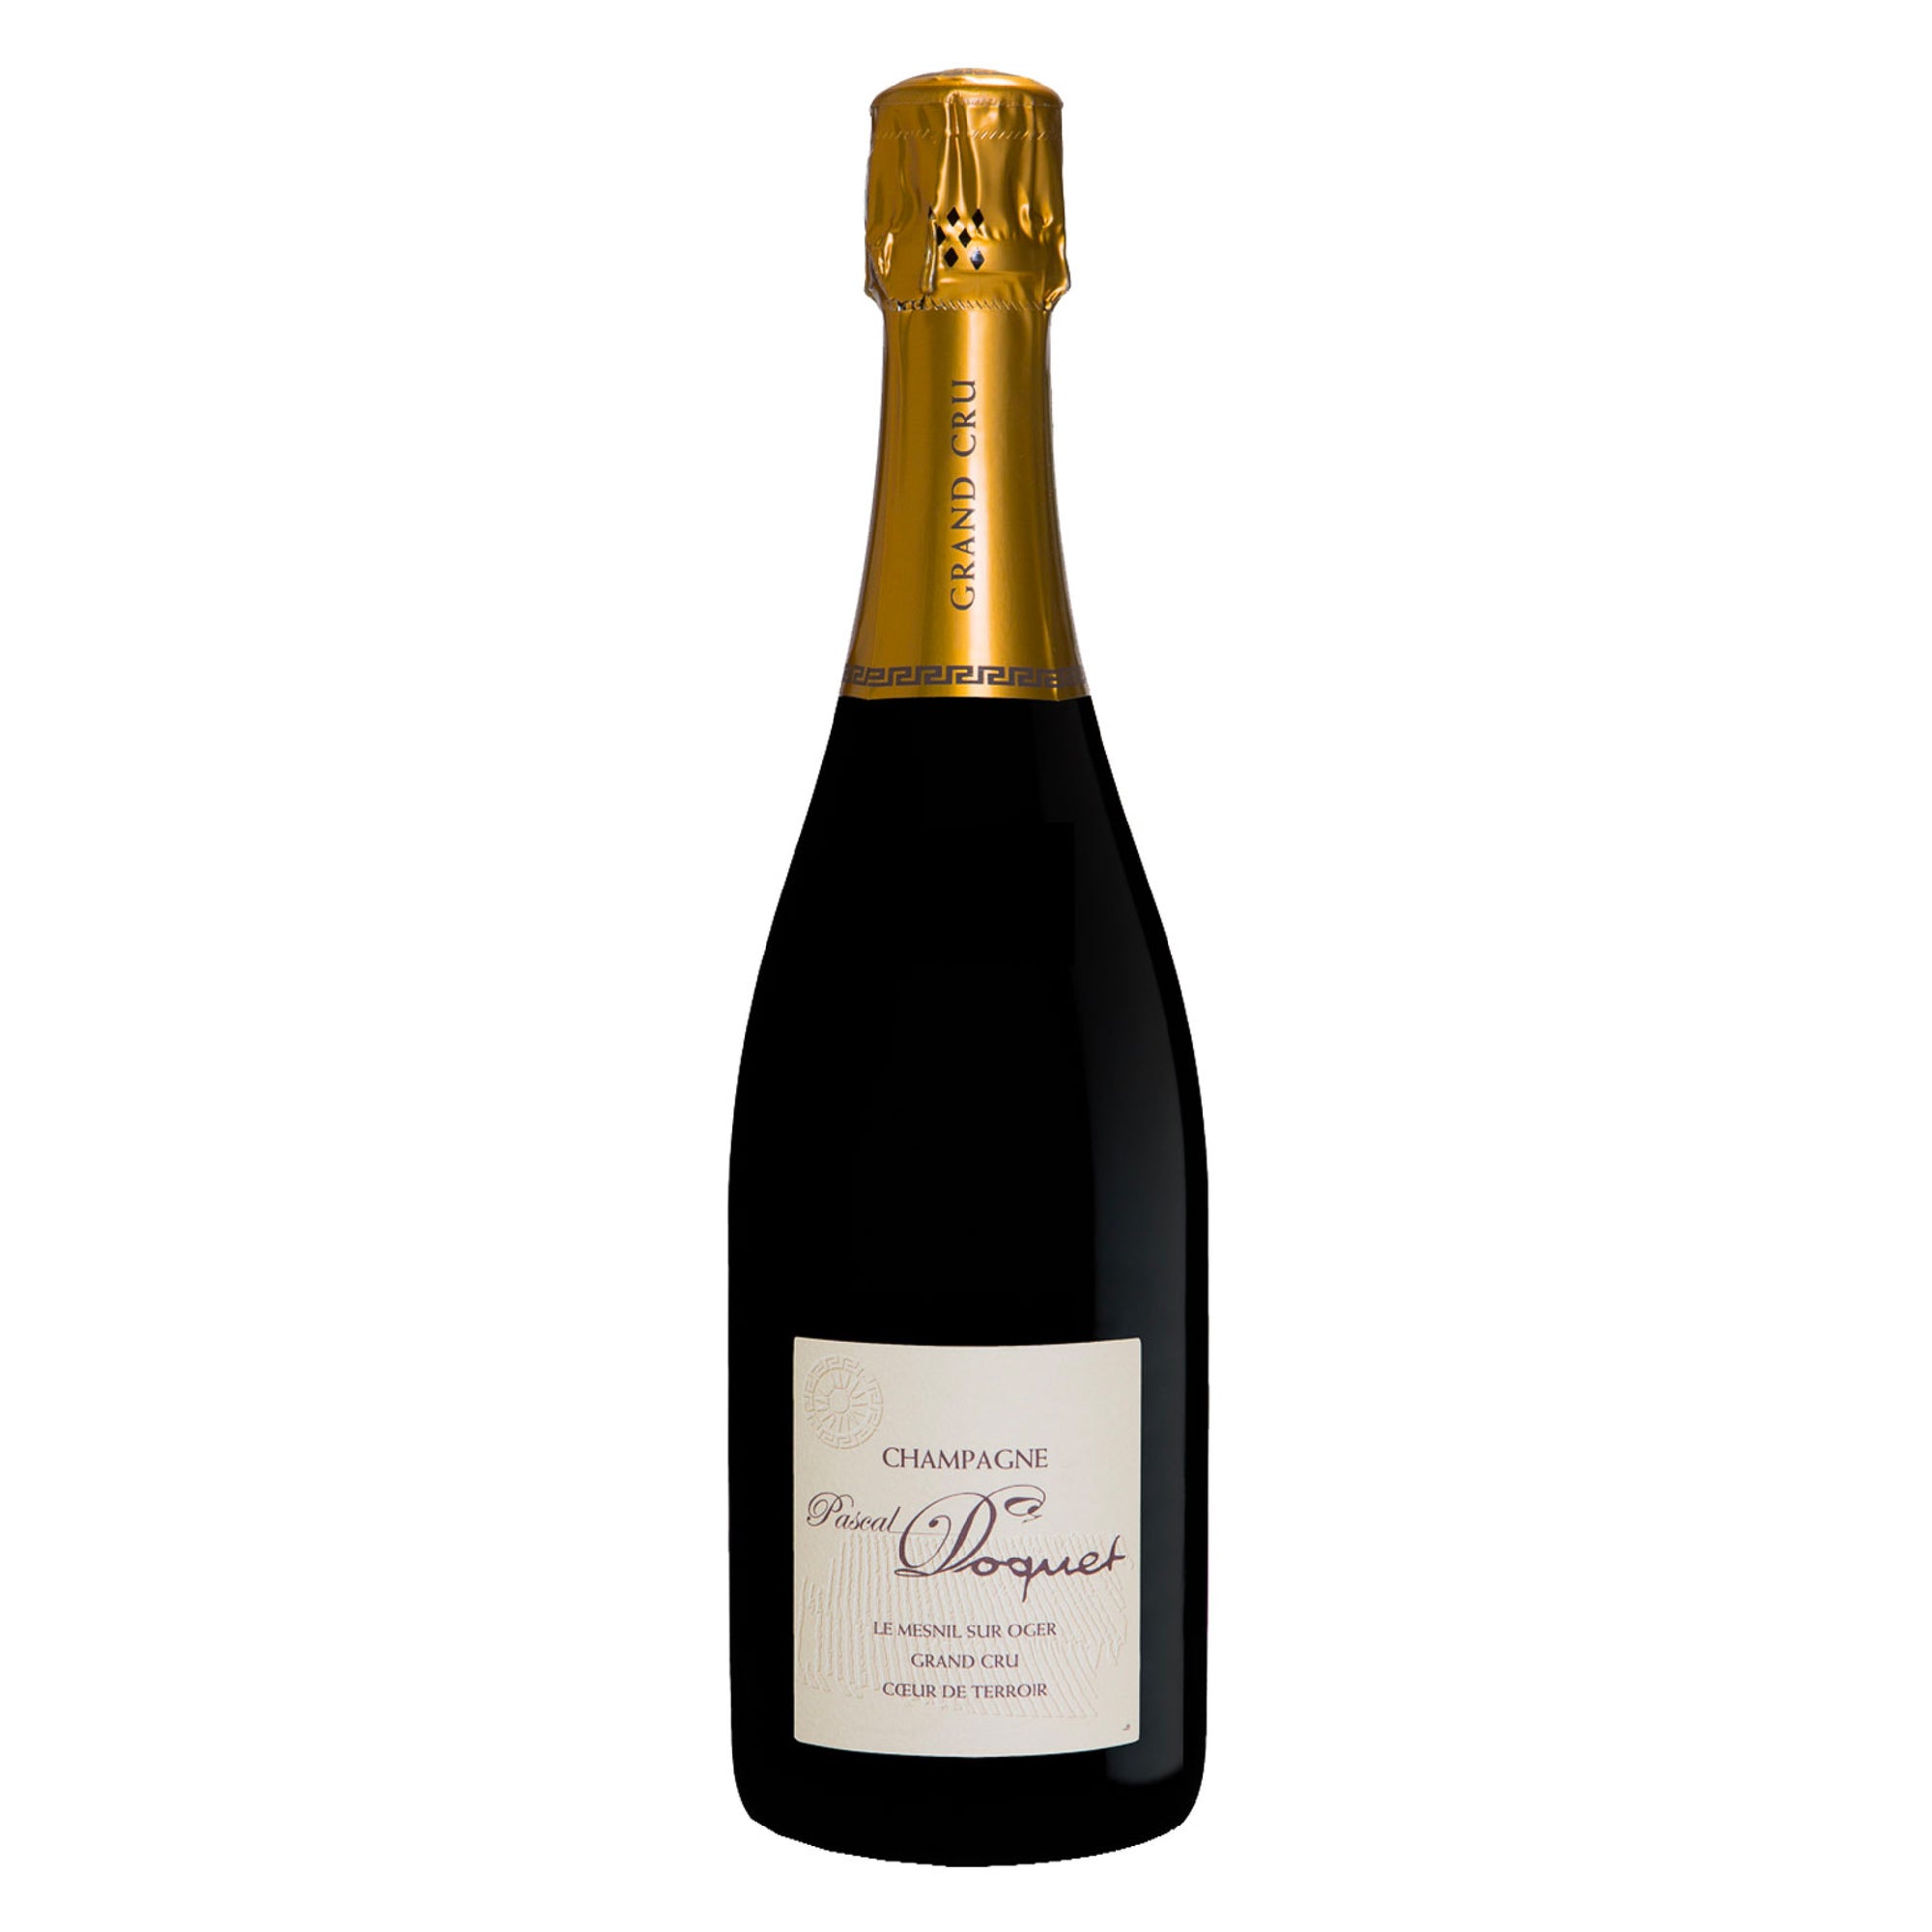 PASCAL DOQUET Champagne Grand Cru Brut "Le Mesnil Sur Oger - Coeur de Terroir" 2009